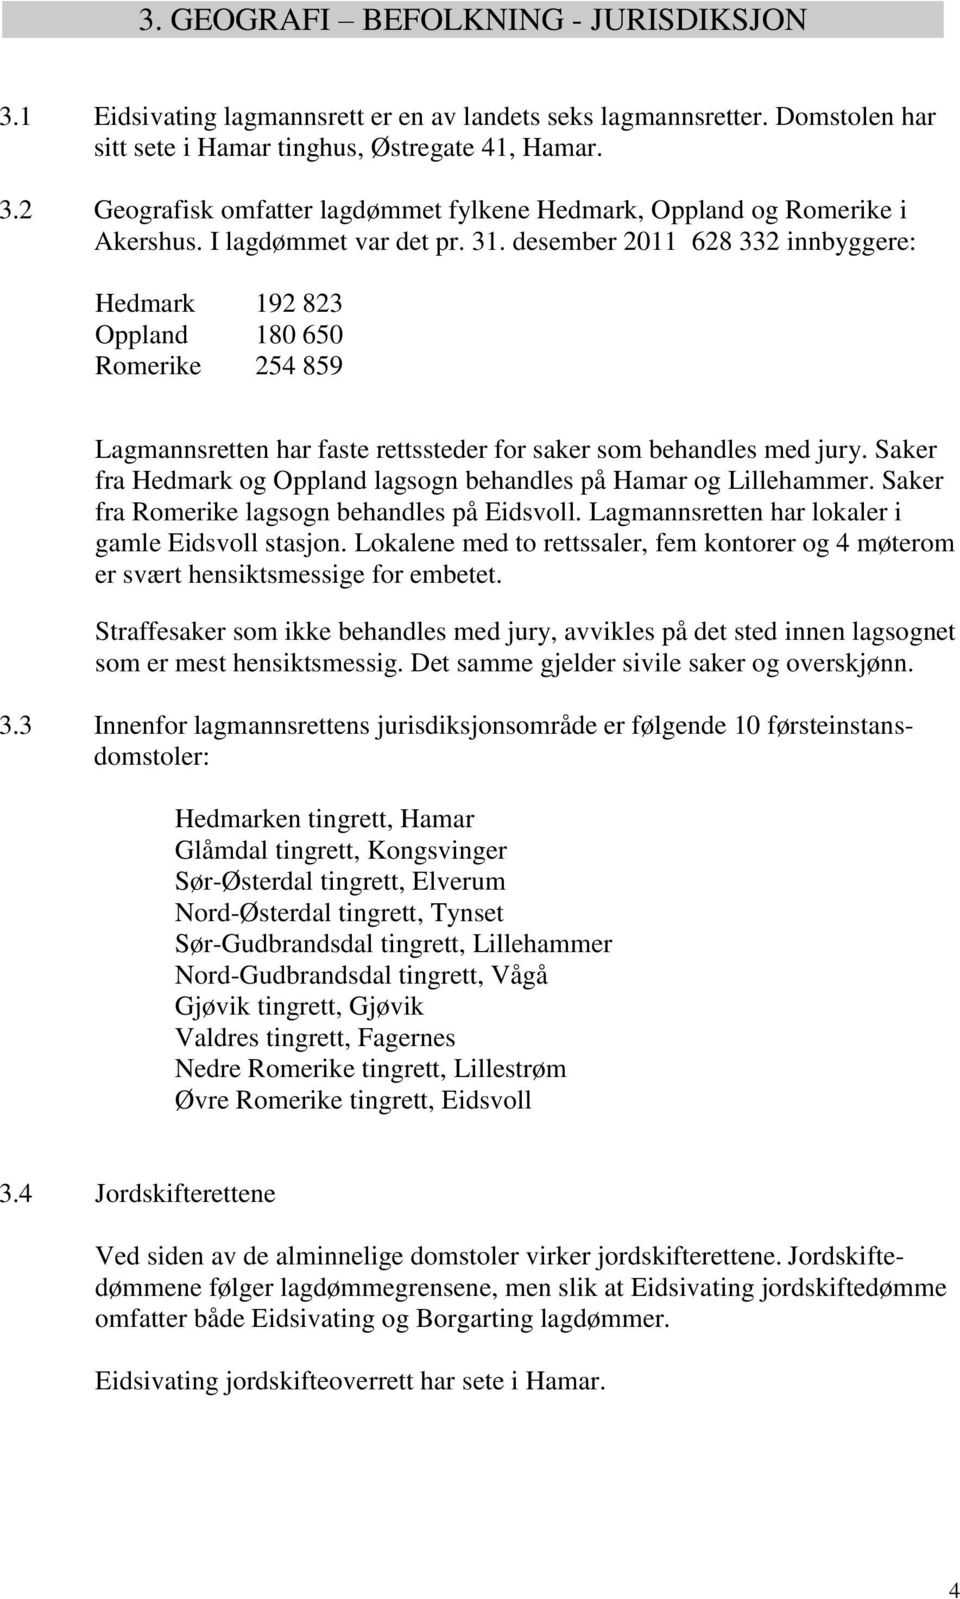 Saker fra Hedmark og Oppland lagsogn behandles på Hamar og Lillehammer. Saker fra Romerike lagsogn behandles på Eidsvoll. Lagmannsretten har lokaler i gamle Eidsvoll stasjon.